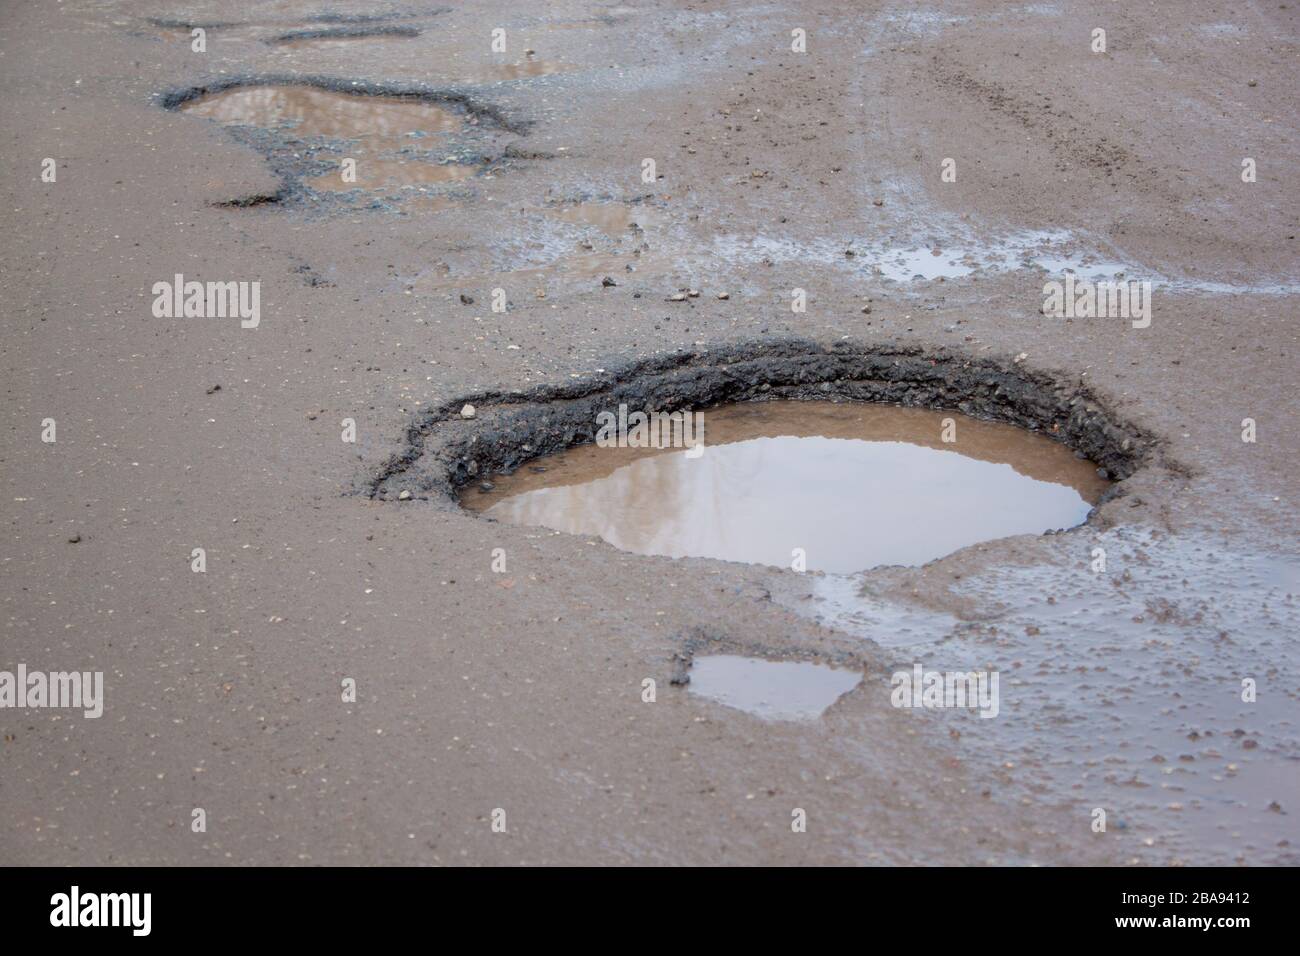 La cattiva strada asfaltata con una grande buche piena d'acqua. Pericoloso distrutto su strada. Riflessi specchio nell'acqua. Foto Stock